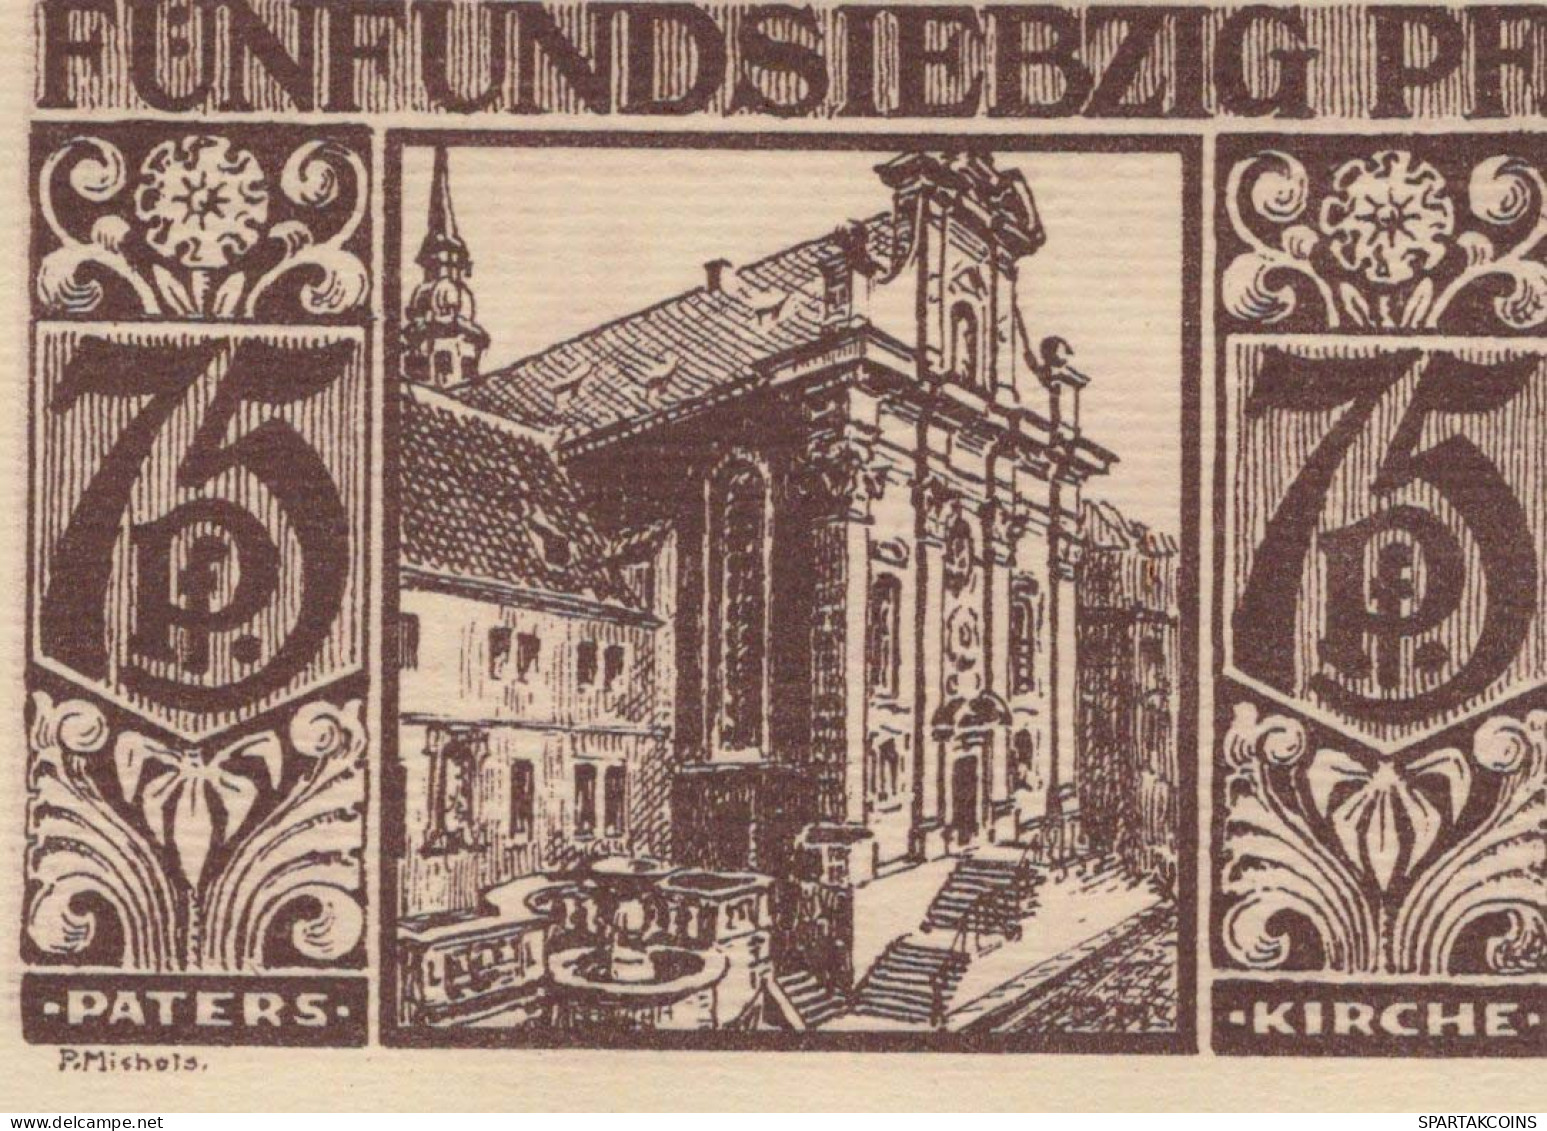 75 PFENNIG 1921 Stadt PADERBORN Westphalia UNC DEUTSCHLAND Notgeld #PB443 - Lokale Ausgaben